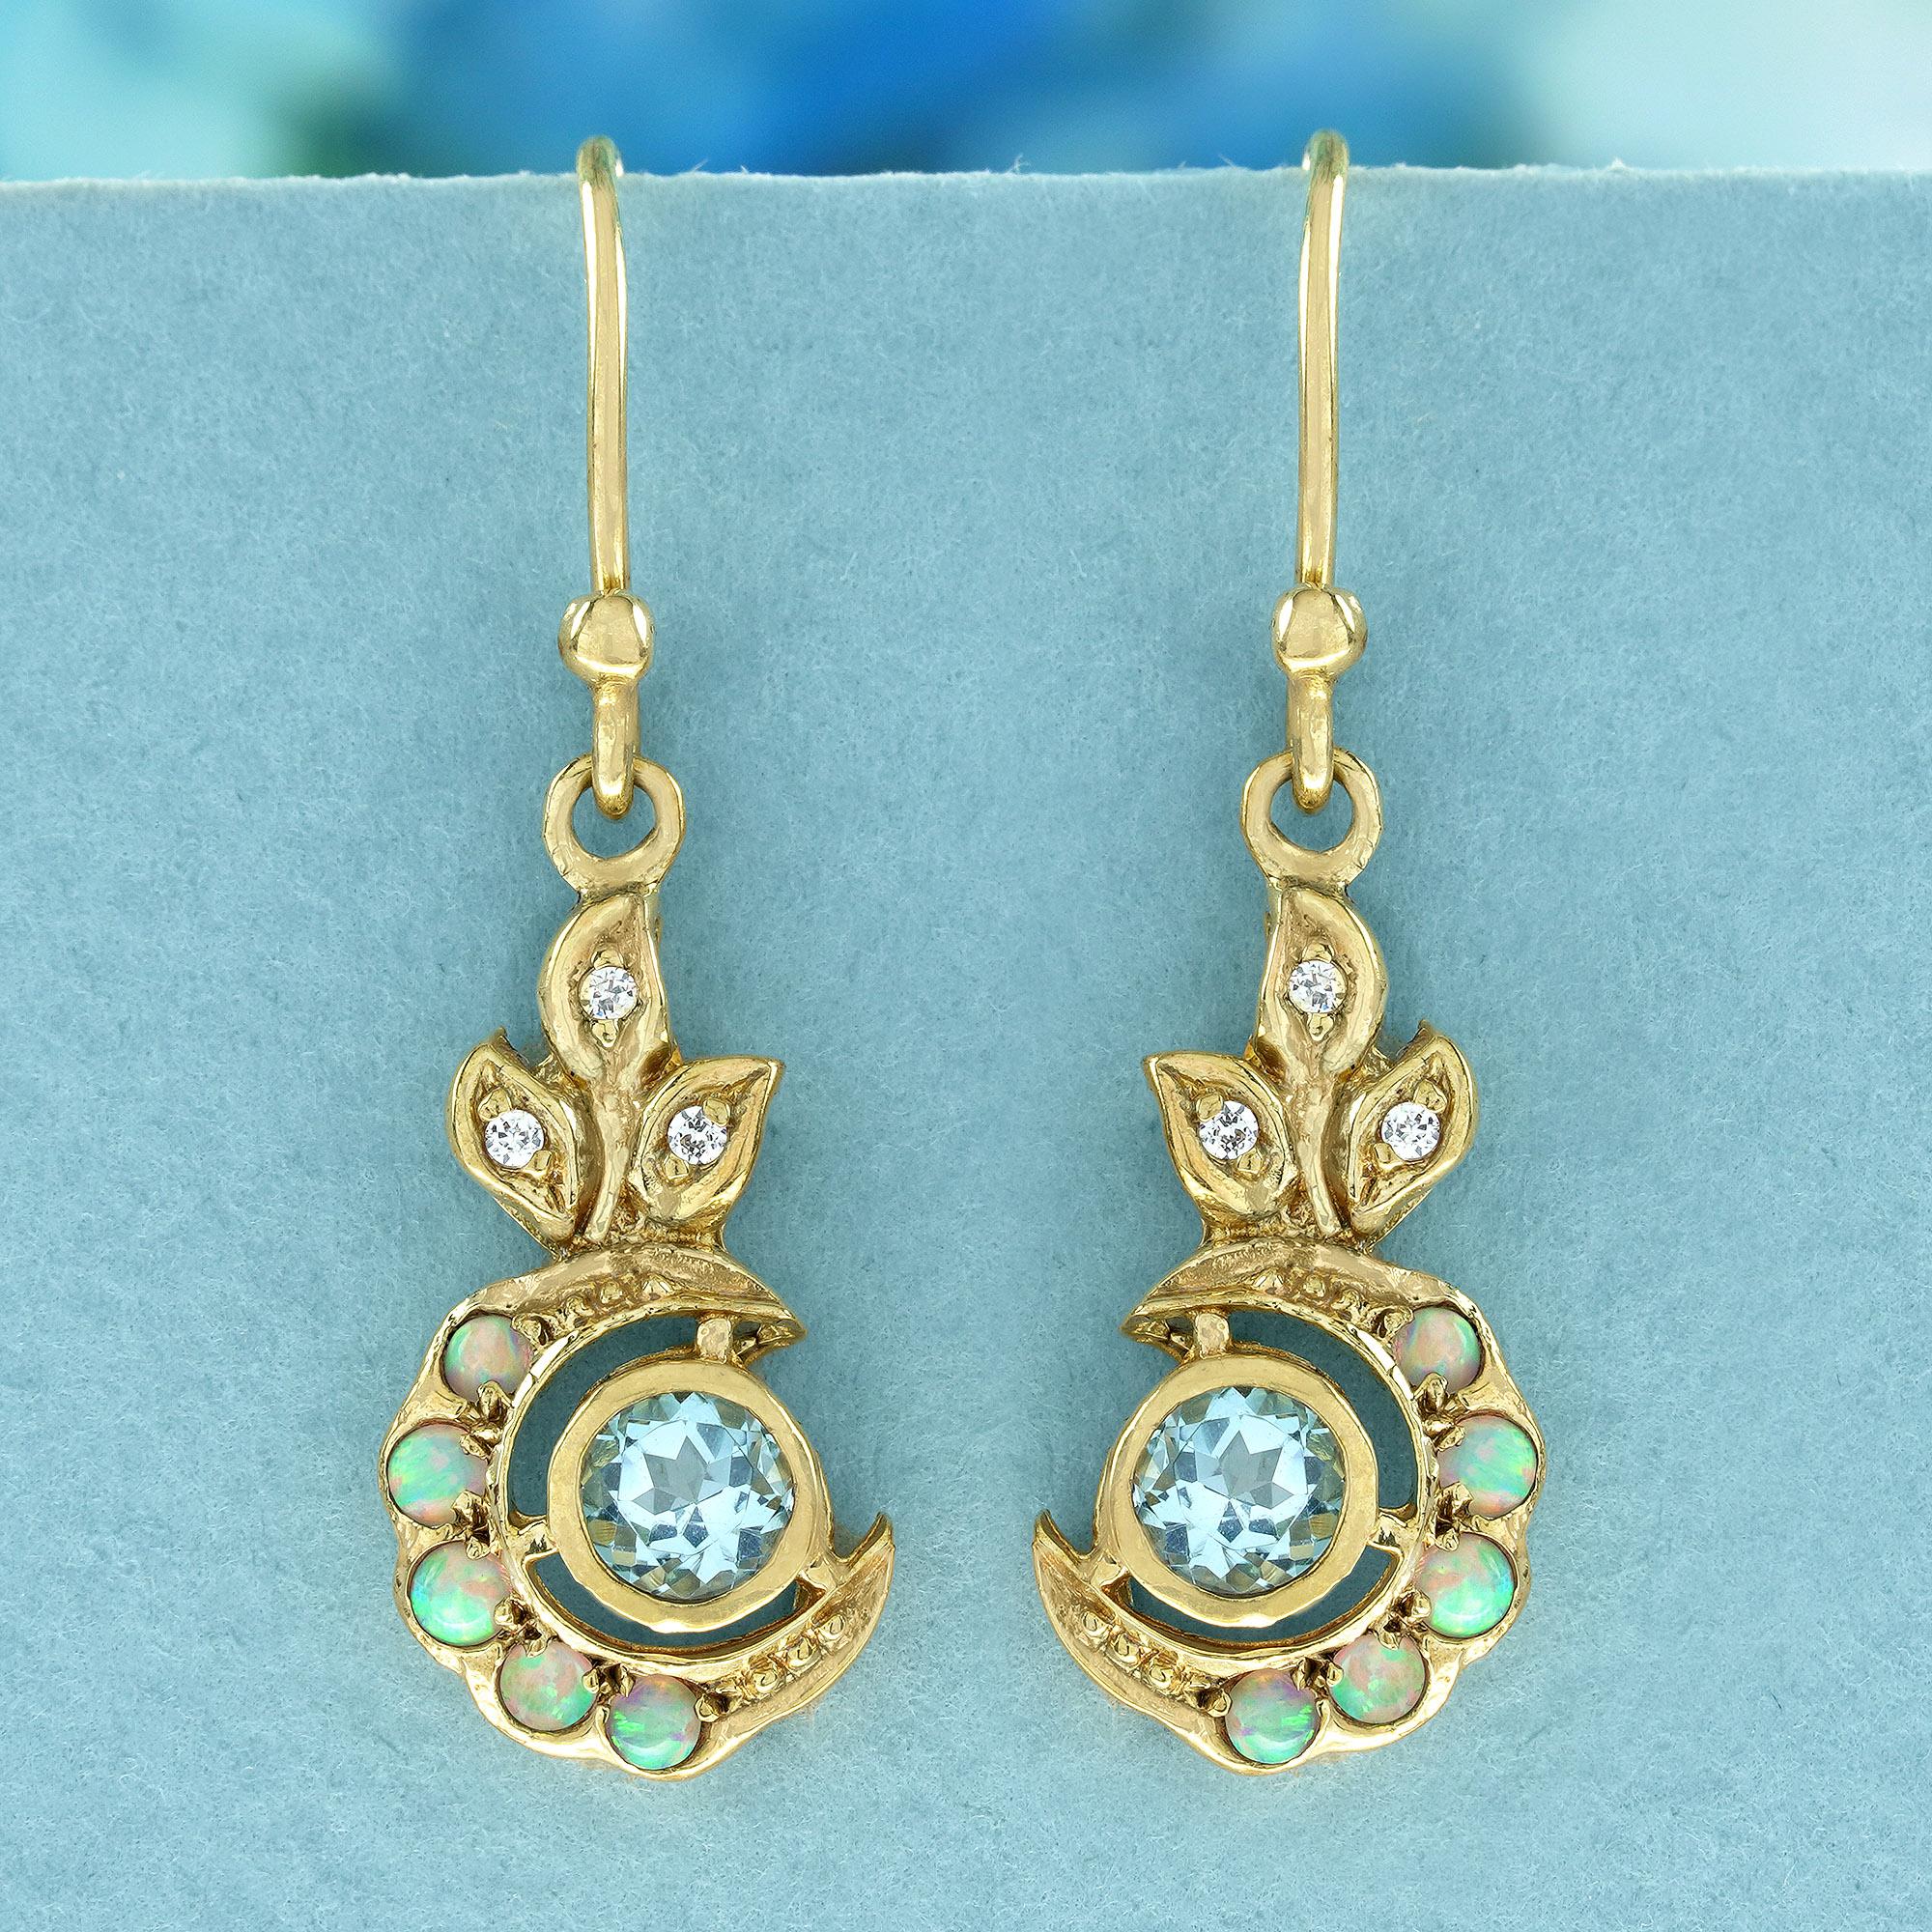 Diese bezaubernden Ohrringe im Vintage-Stil erblühen in leuchtenden Farben. Ein runder Blautopas steht im Mittelpunkt, eingebettet in eine Mondsichel aus warmem Gelbgold.
 Zarte weiße Opale schimmern durch das Gold hindurch und sorgen für ein